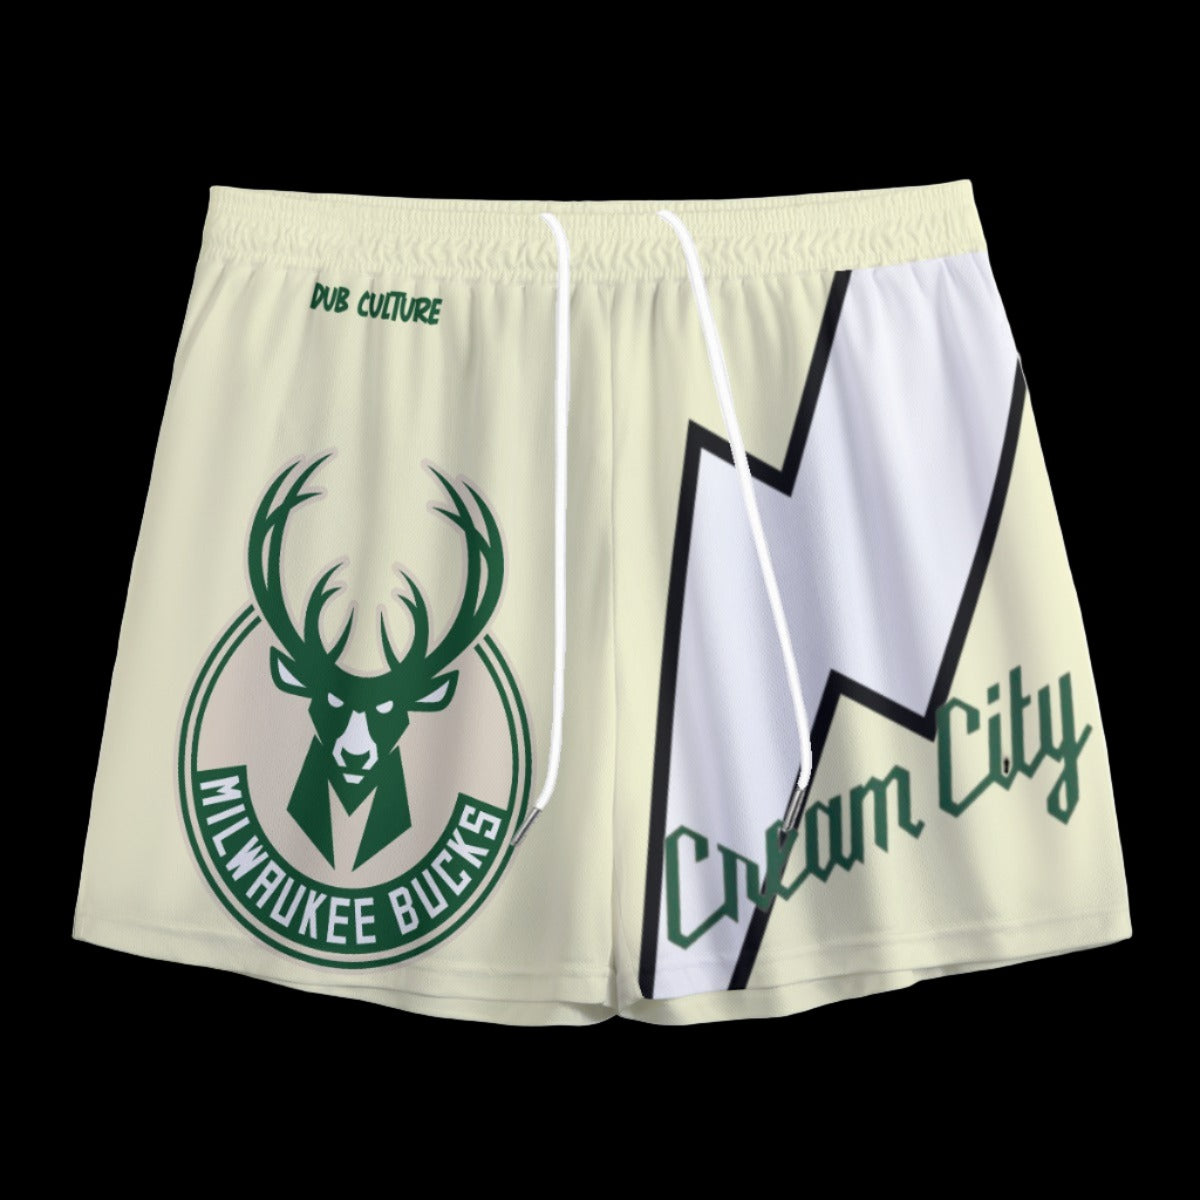 Bucks "Cream City" Mesh Shorts